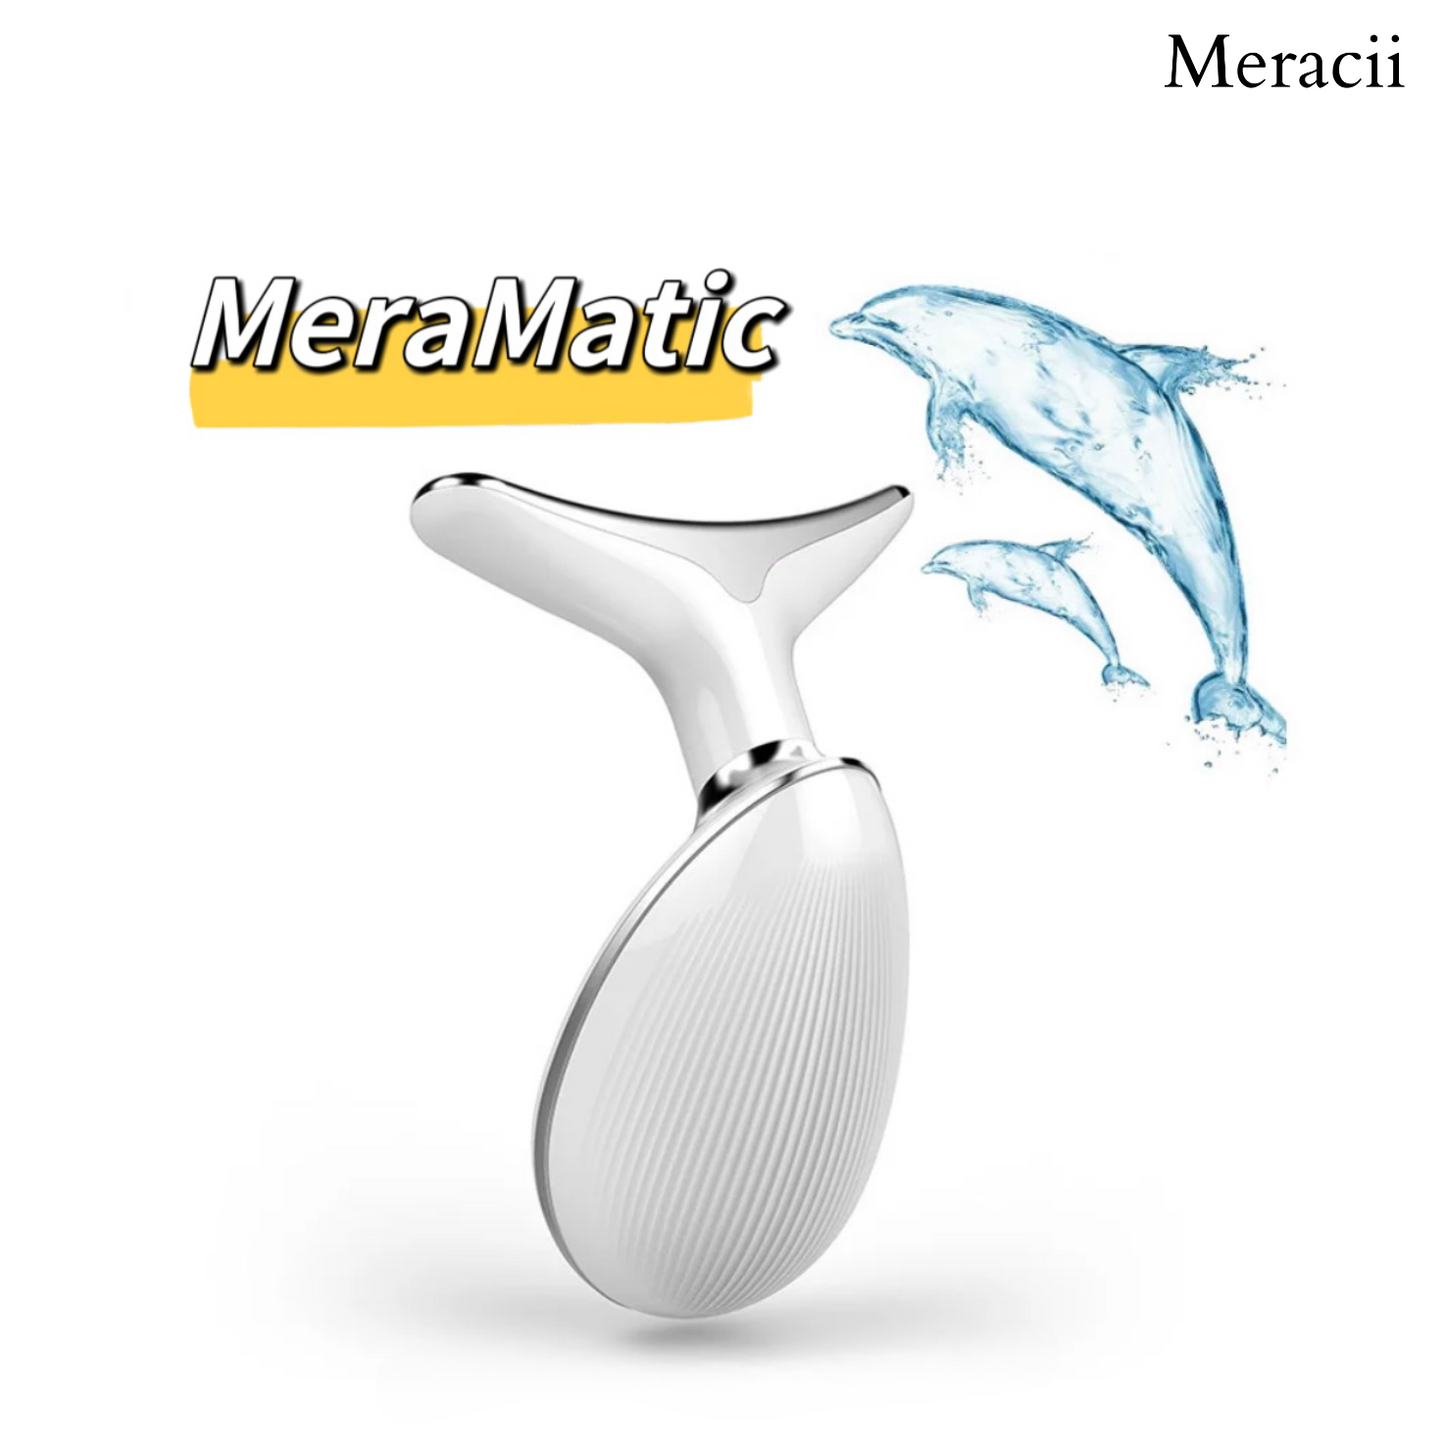 MeraMatic